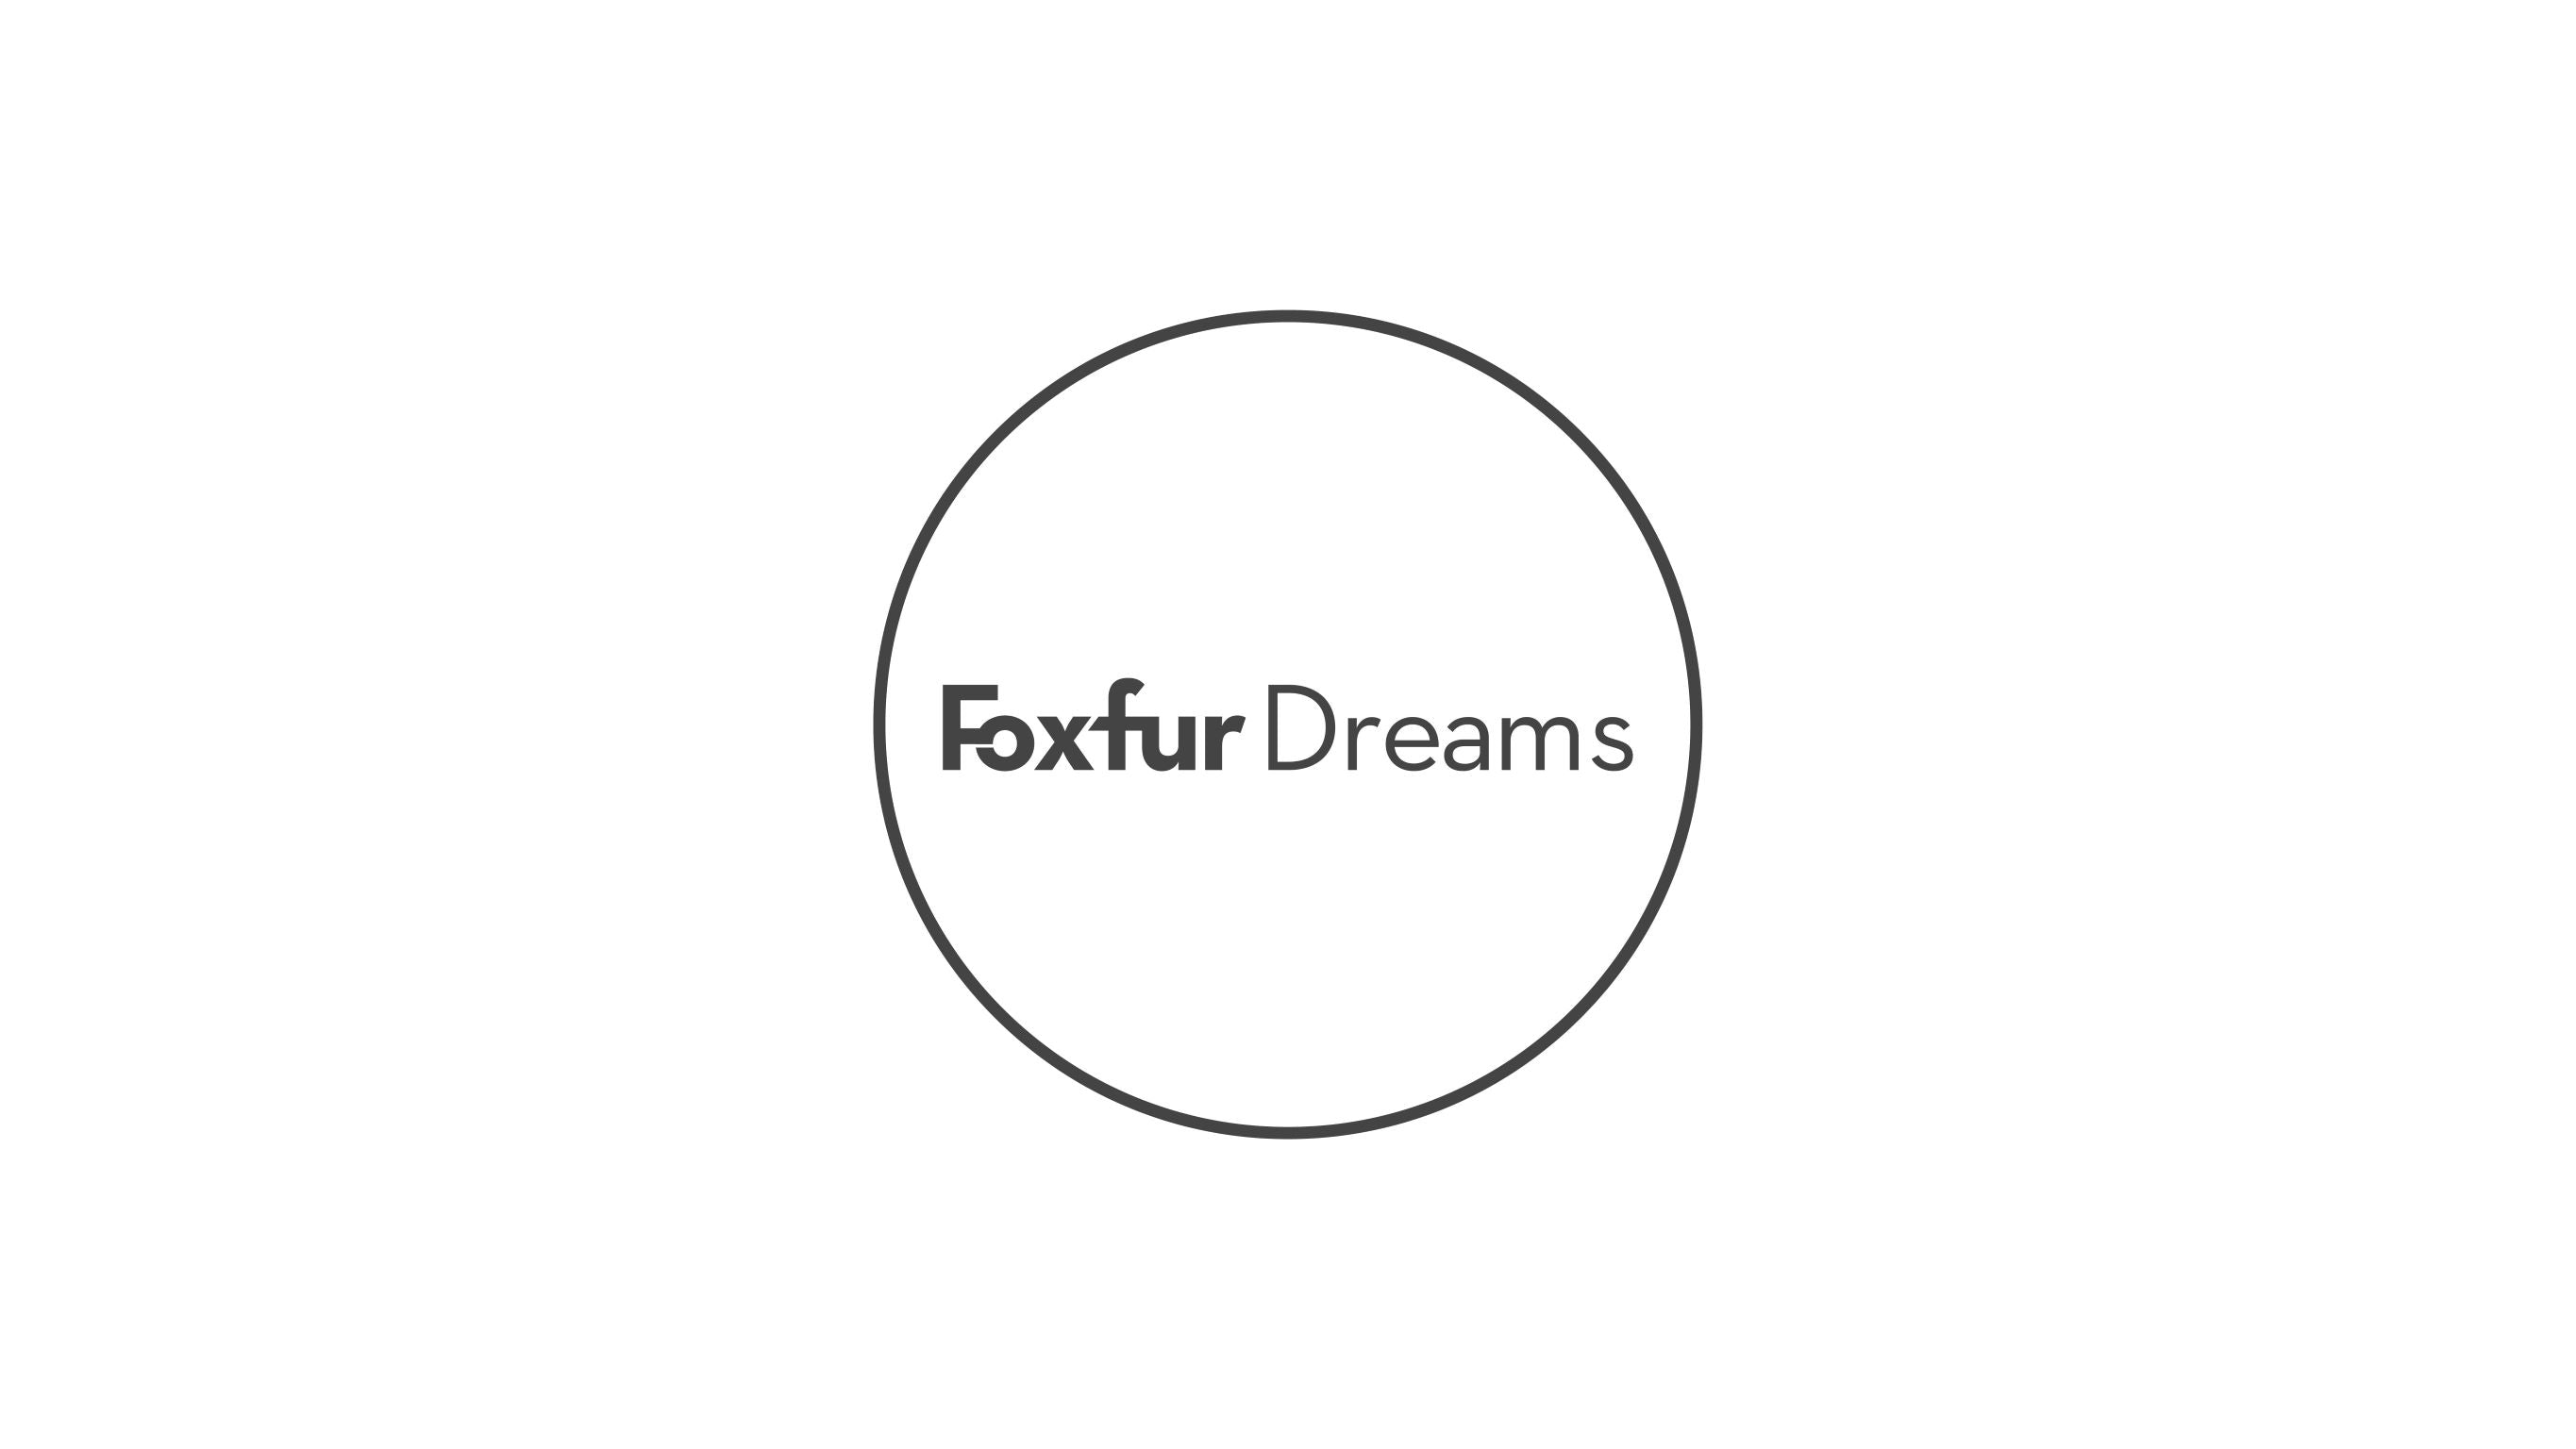 Foxfurdreams